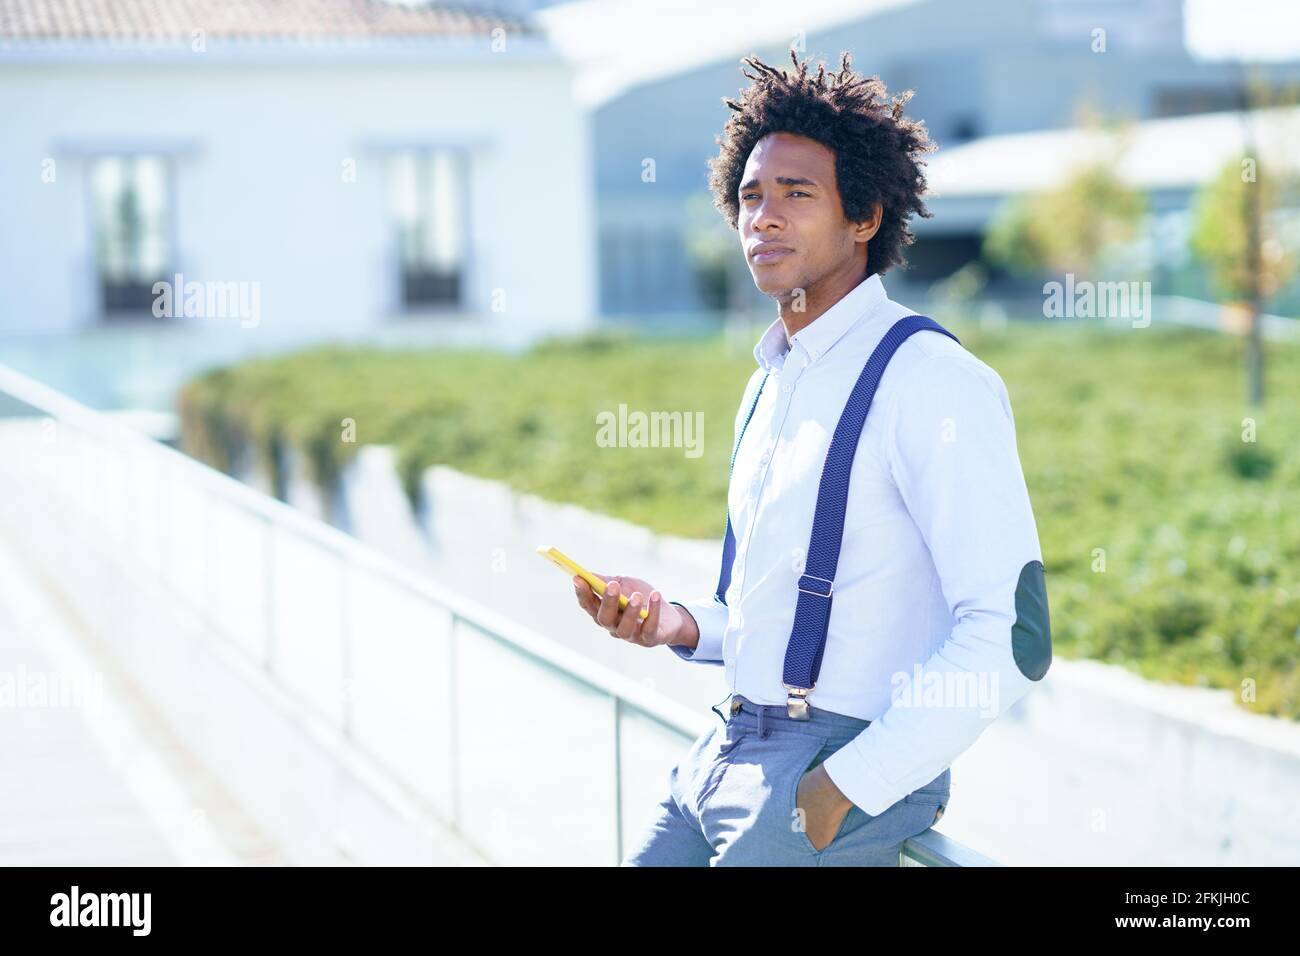 Homme noir avec une coiffure afro à l'aide d'un smartphone près d'un bâtiment de bureau. Banque D'Images